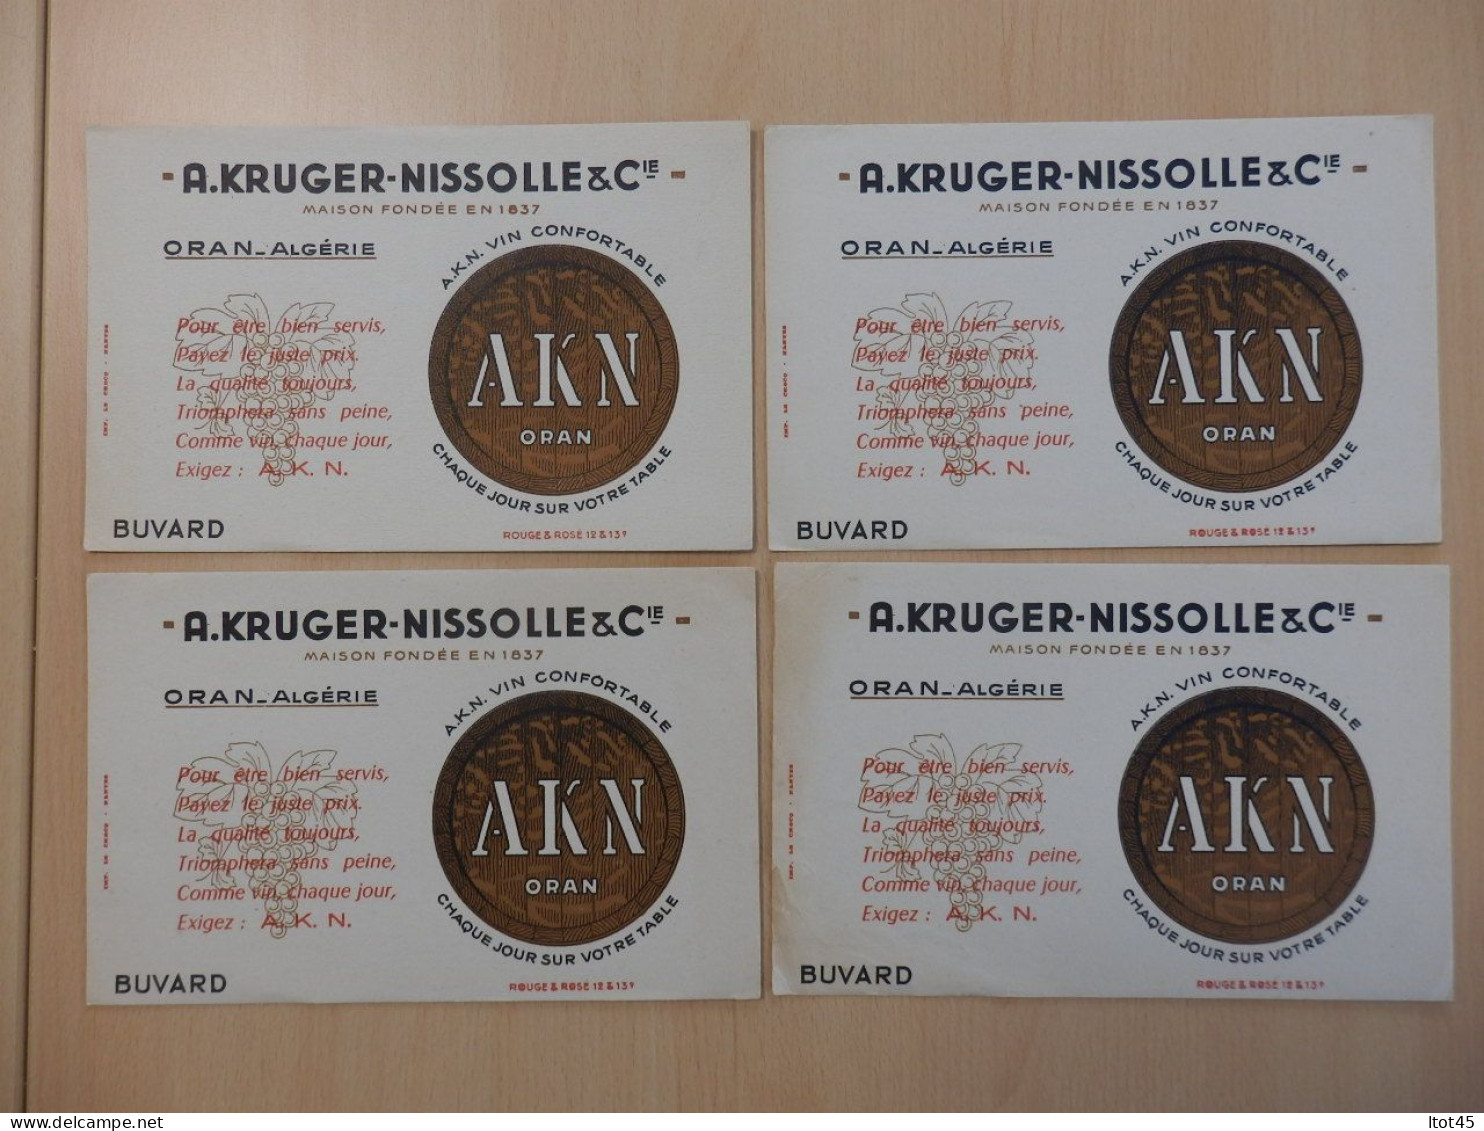 LOT DE 4 BUVARDS A. KRUGER-NISSOLLE & Cie VIN CONFORTABLE ORAN-ALGERIE - Liquor & Beer